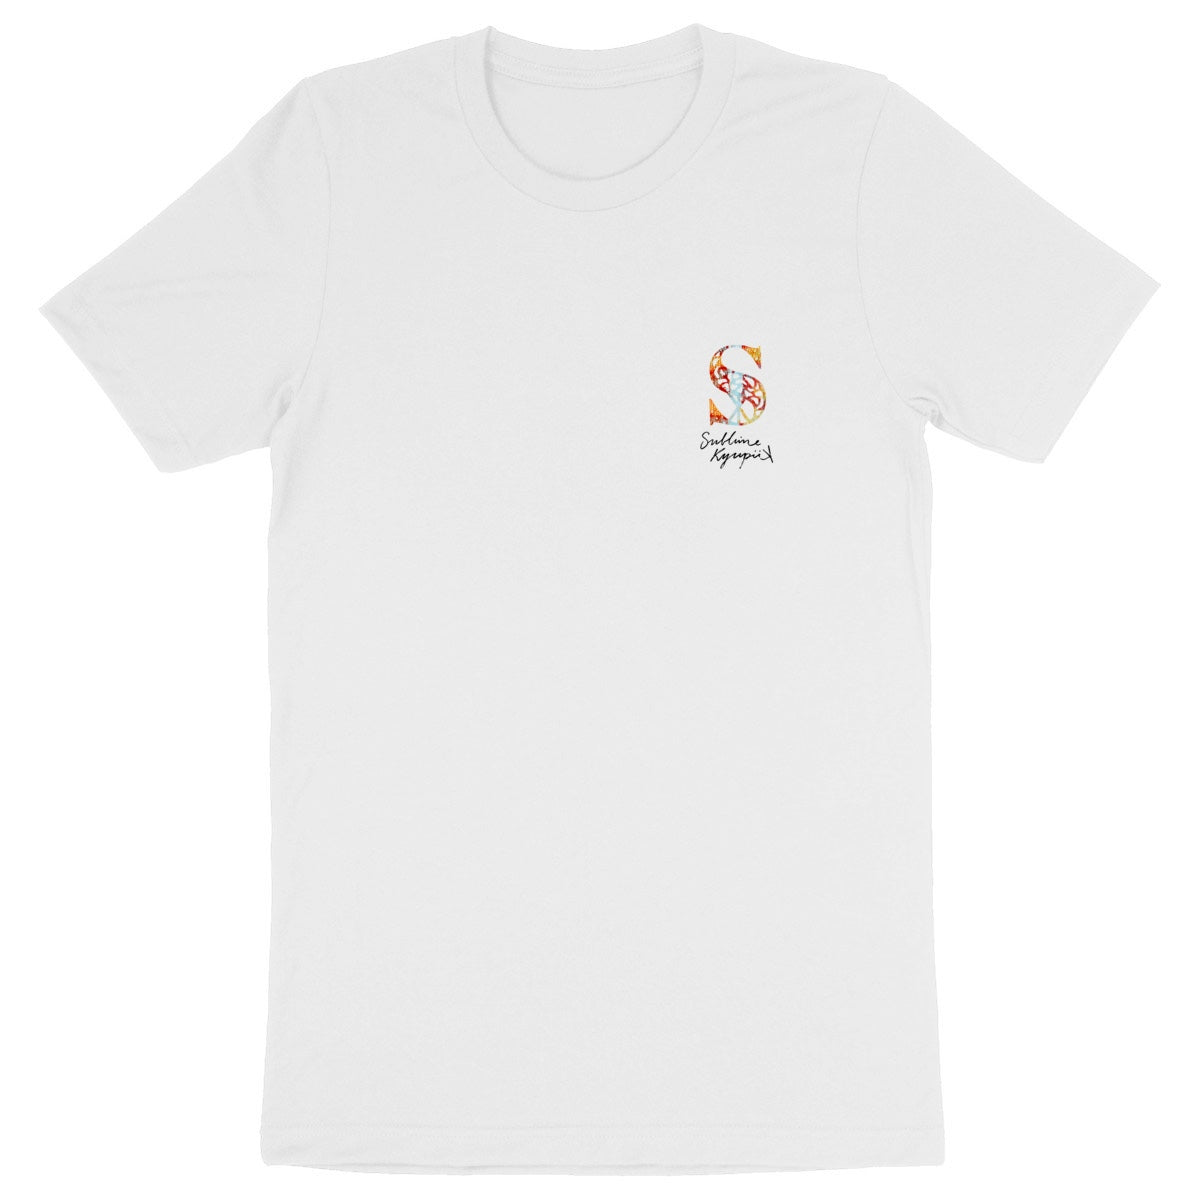 T-shirt "Sublime KyupiiK Caméléon"